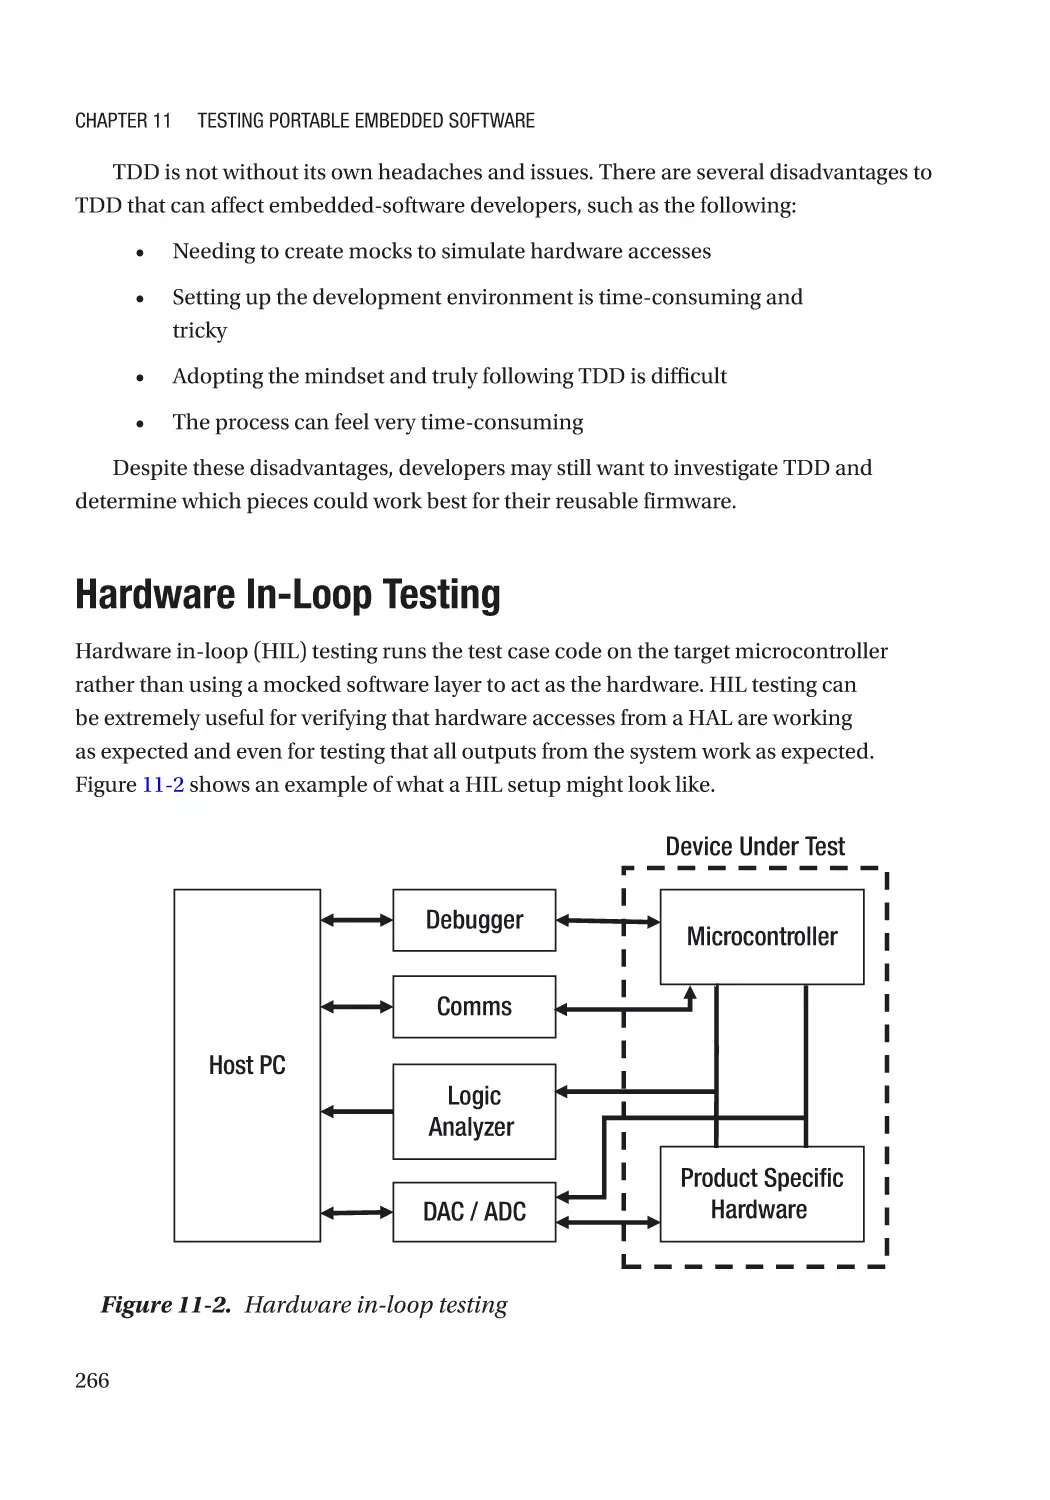 Hardware In-Loop Testing